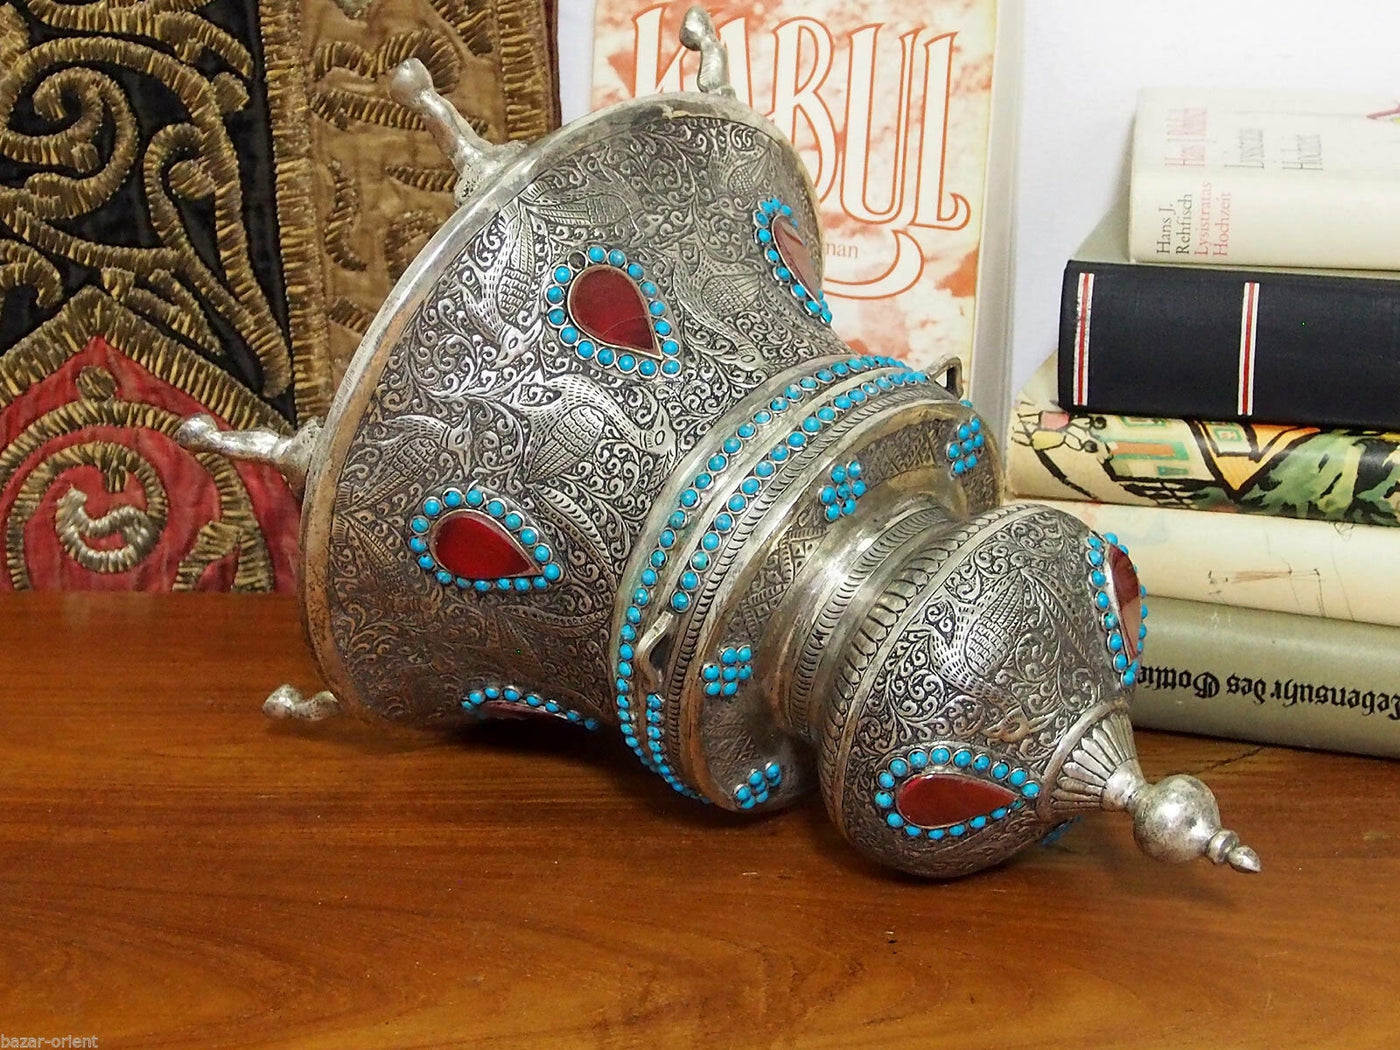 Extravagant handgearbeitete orientalische islamische Neusilber büchse Schmuckdose schatulle Truhe  verziert aus Afghanistan 01  Orientsbazar   